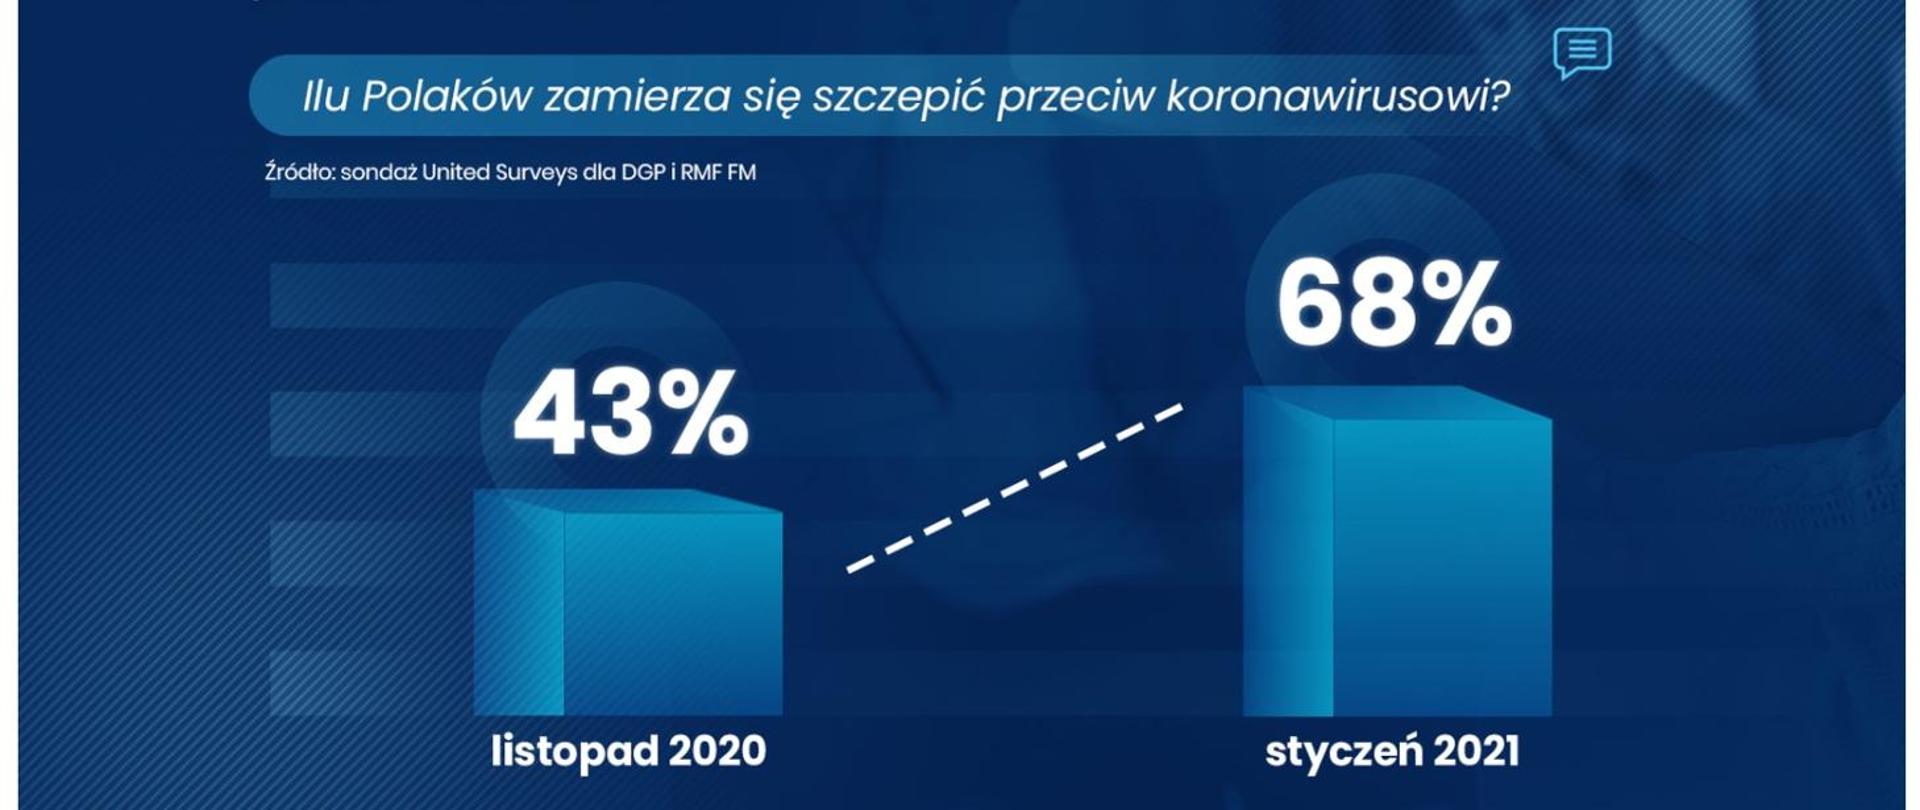 Grafika przedstawia słupkowy wzrost chęci zaszczepienia się przez Polaków między listopadem 2020 (43%) a styczniem 2021 (68%)